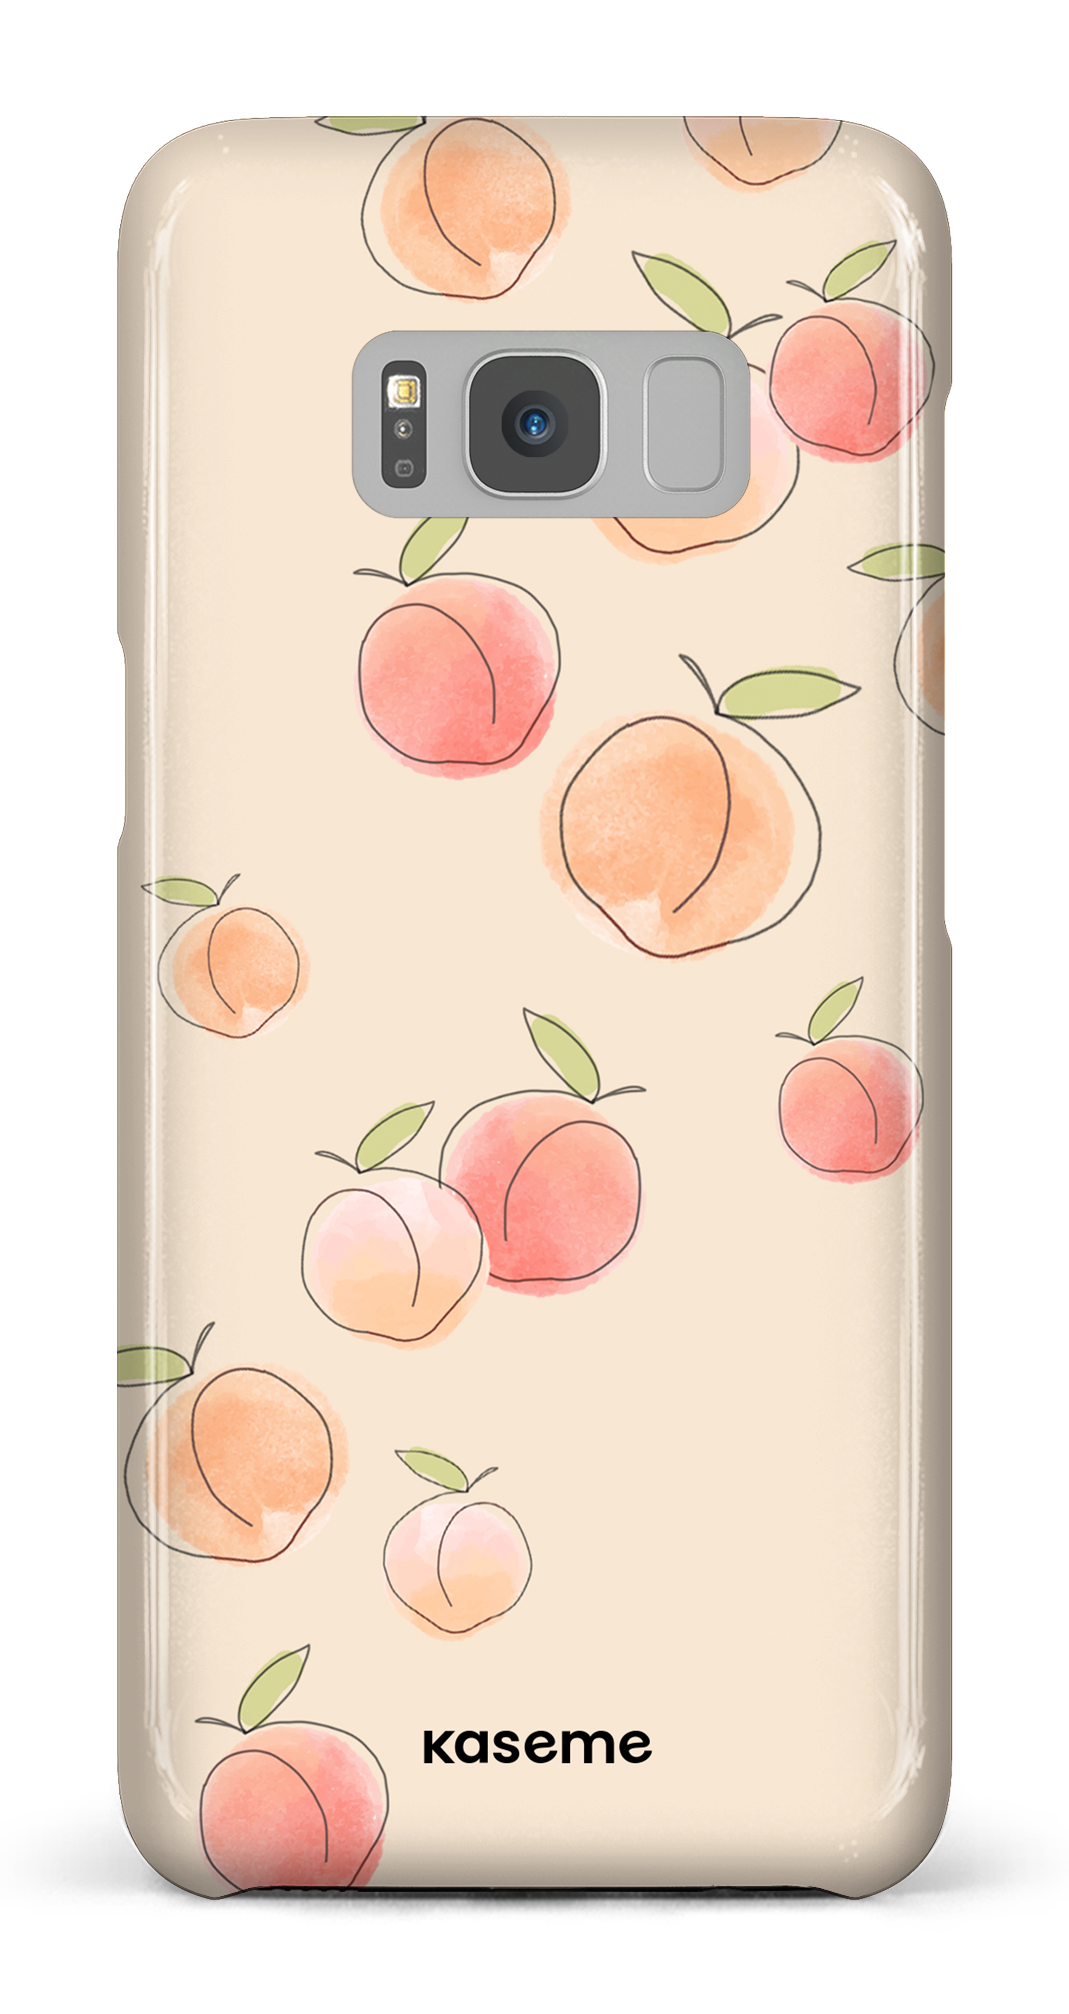 Peachy - Galaxy S8